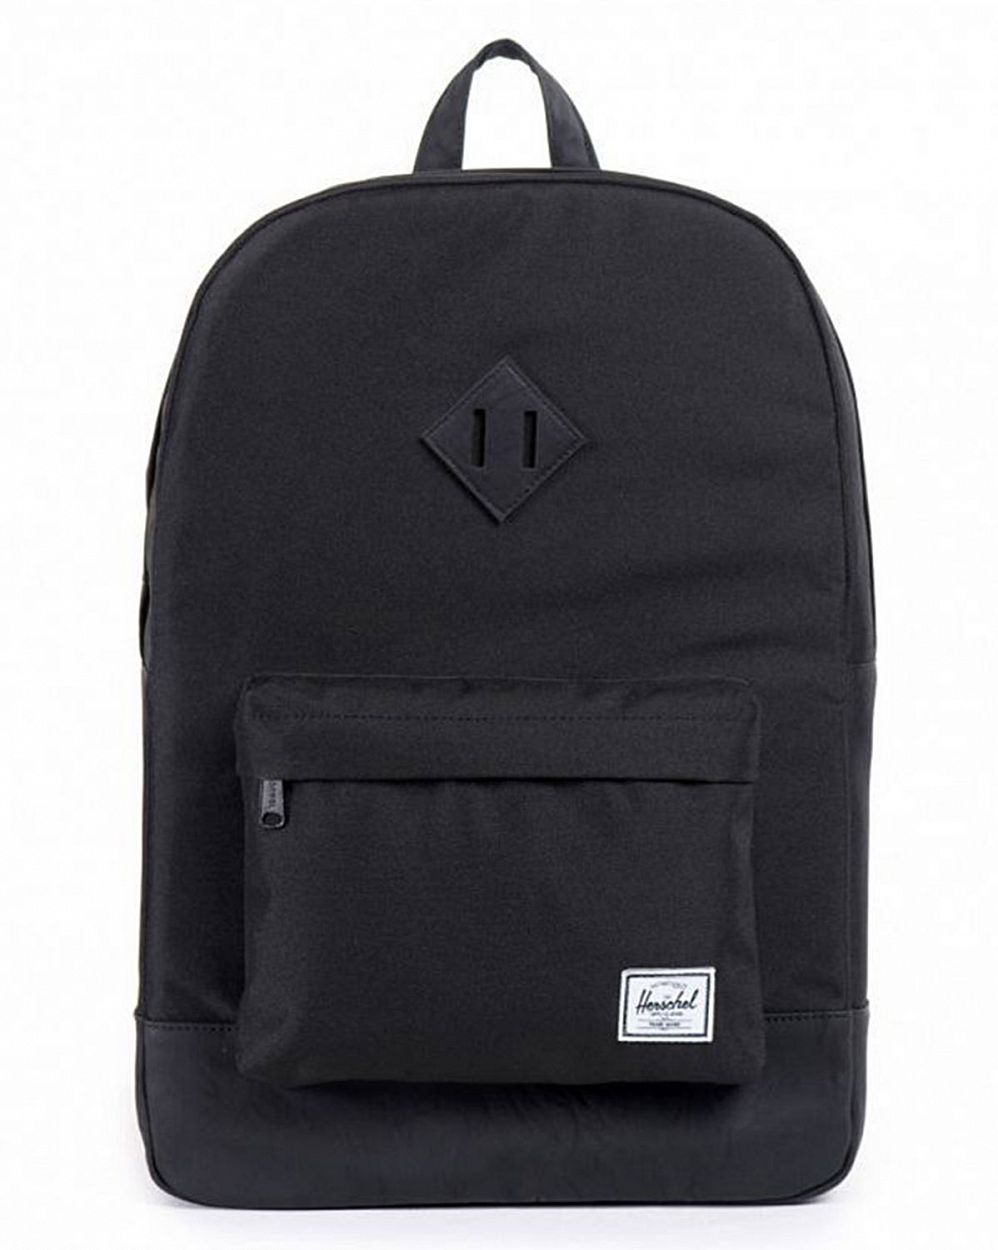 Рюкзак водоотталкивающий с карманом для 15 ноутбука Herschel Heritage Black Black отзывы